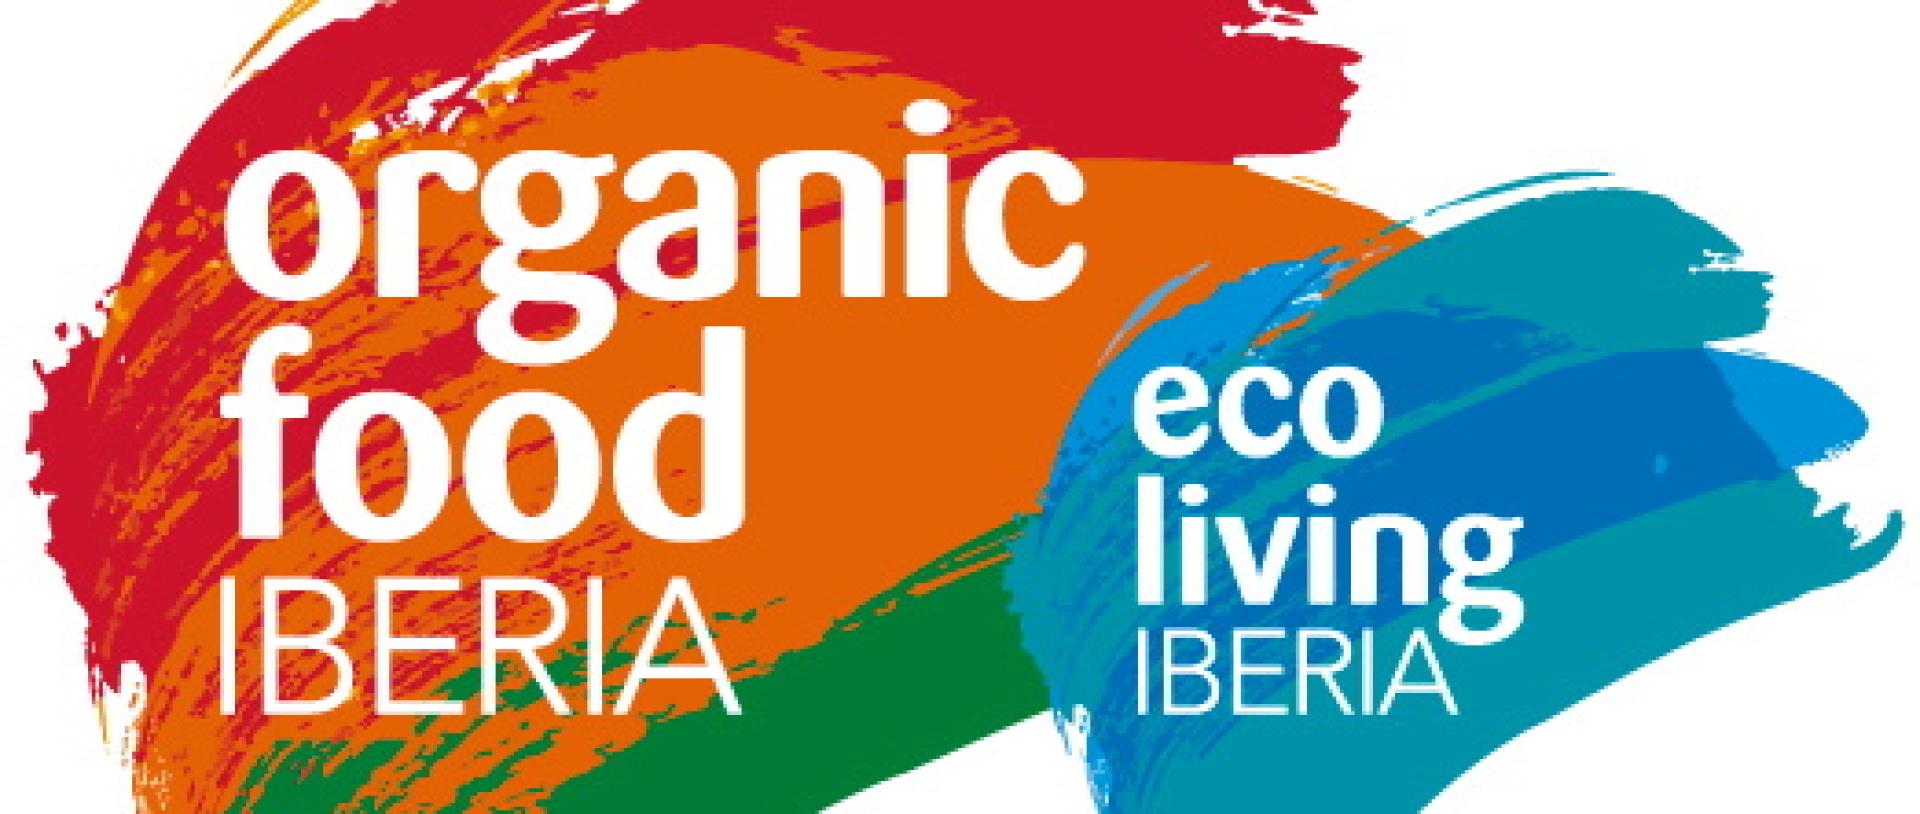 Rozstrzygnięcie naboru uzupełniającego przedsiębiorstw na stoisko regionalne Województwa Wielkopolskiego na targach Organic Food Iberia 2022, Madryt (Hiszpania) - zobacz więcej